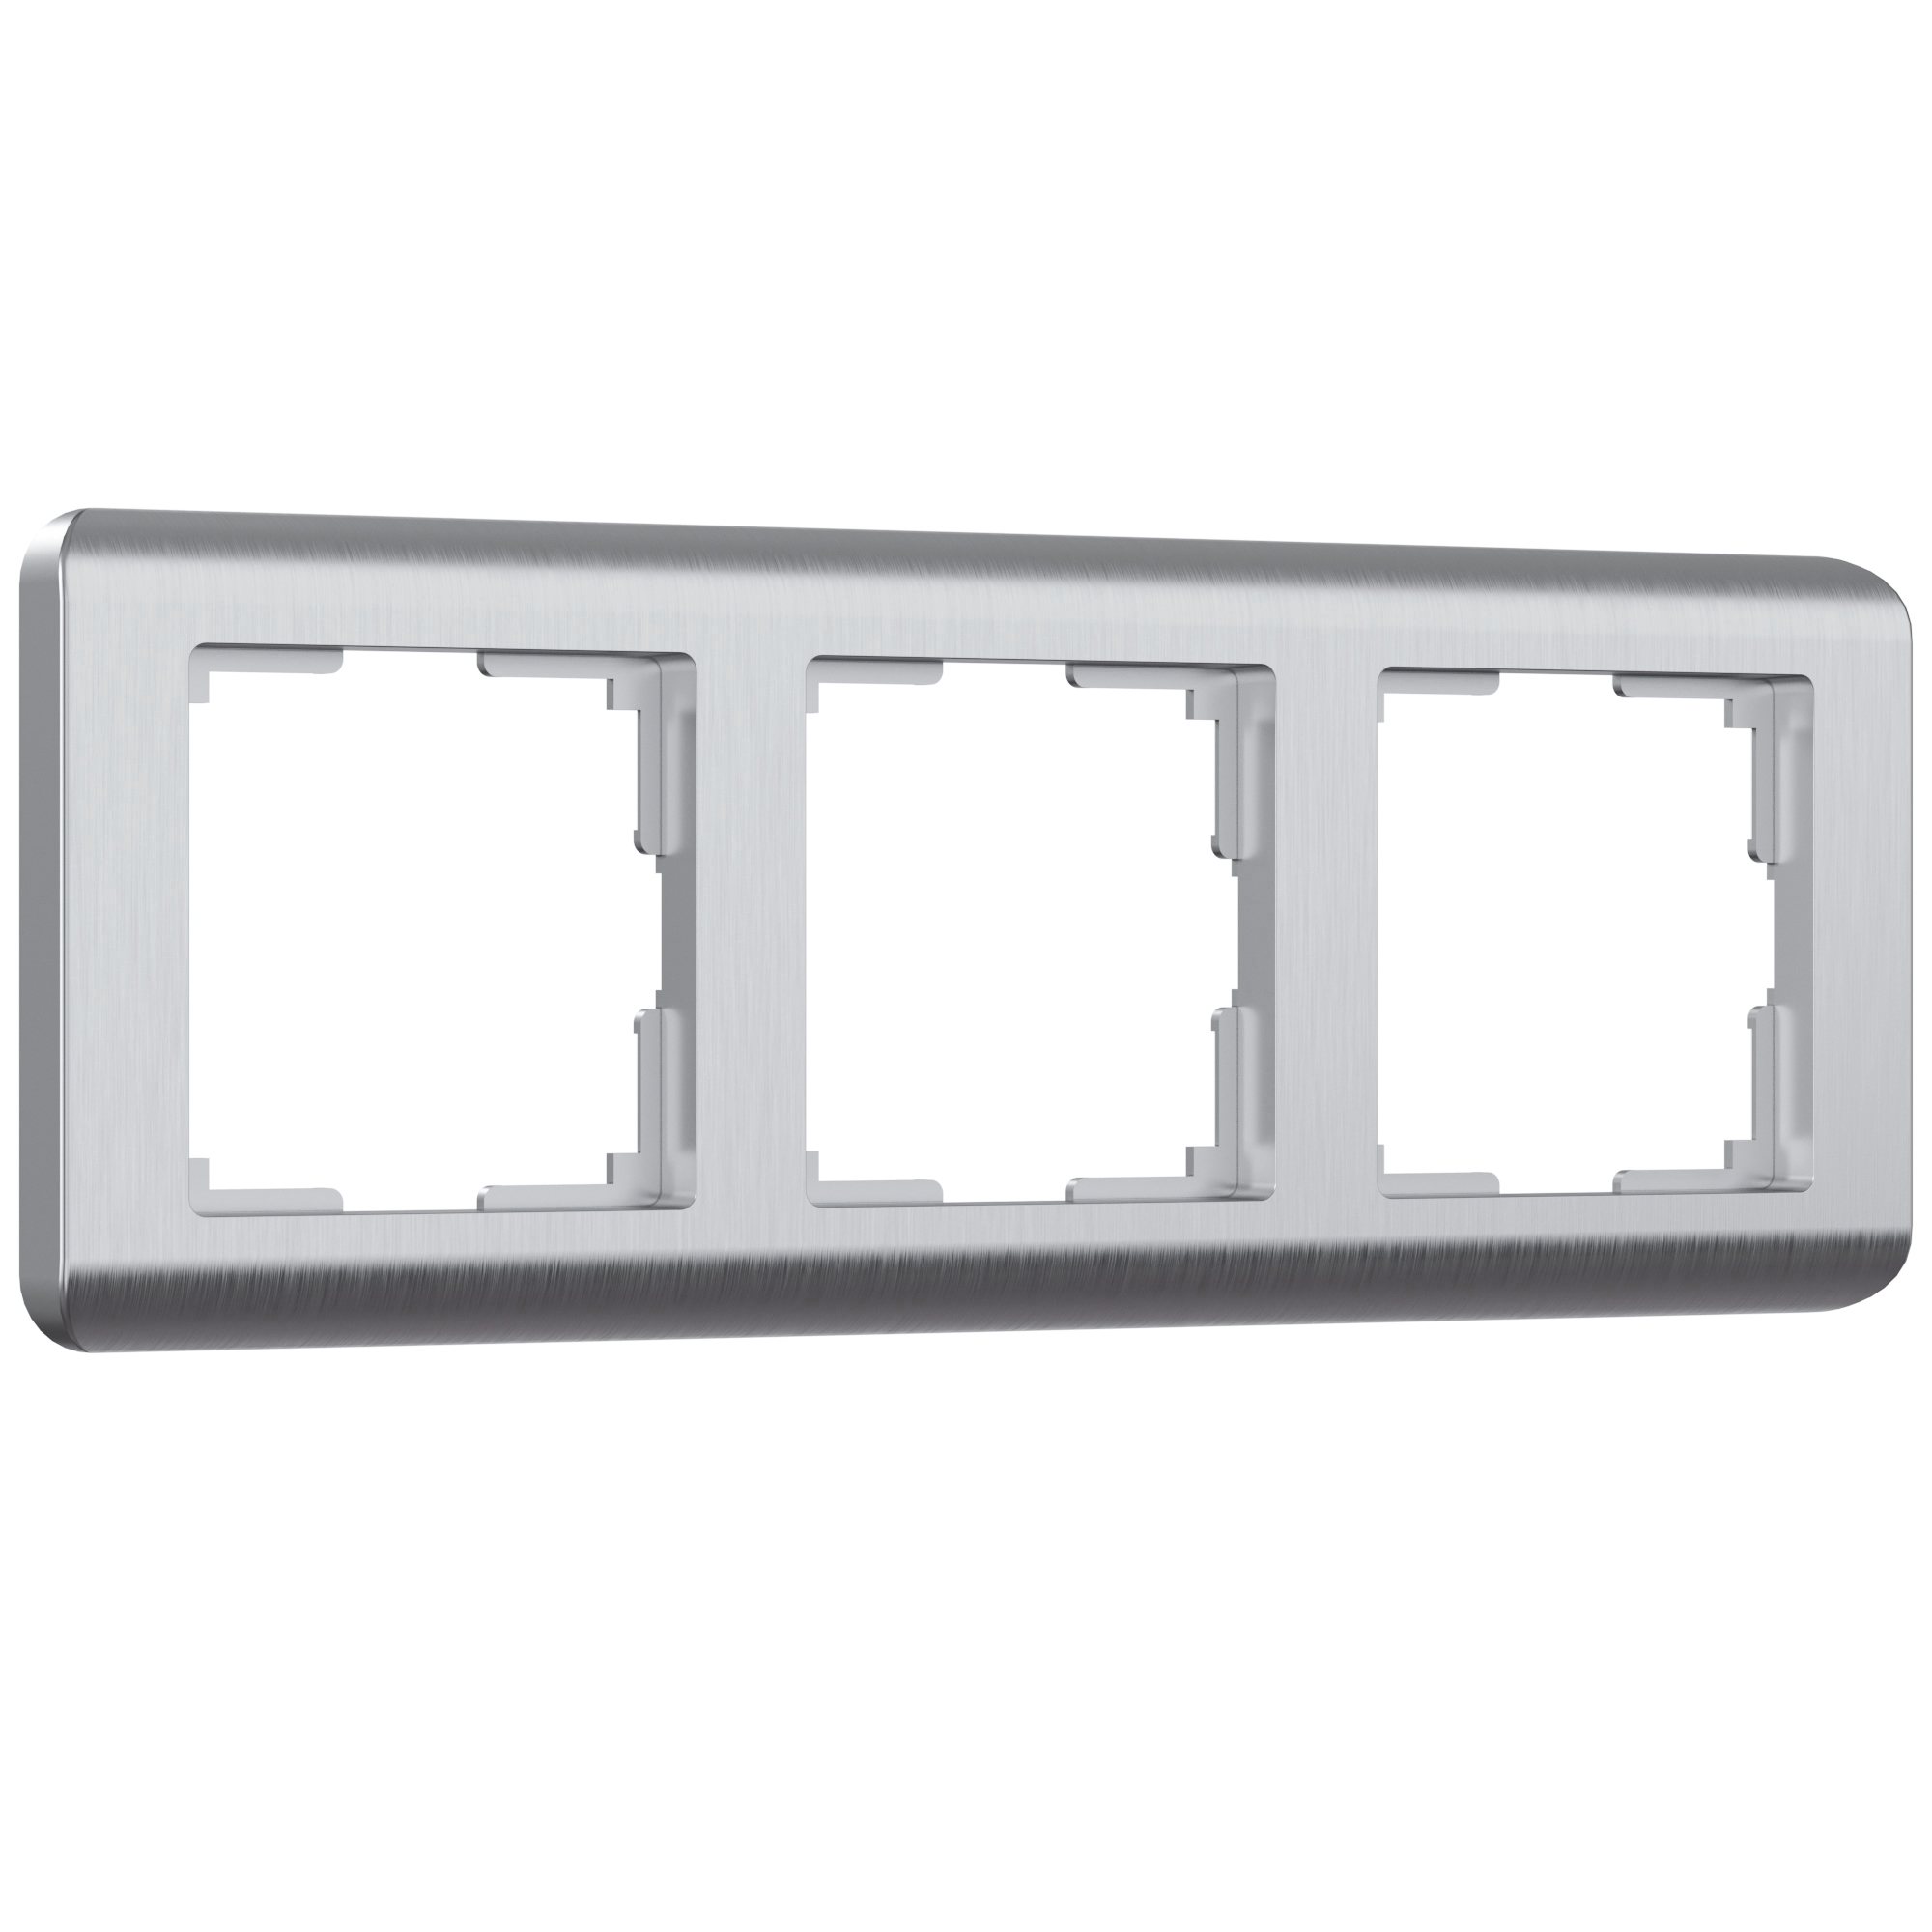 Рамка для розетки / выключателя на 3 поста Werkel W0032106 Stream серебряный пластик